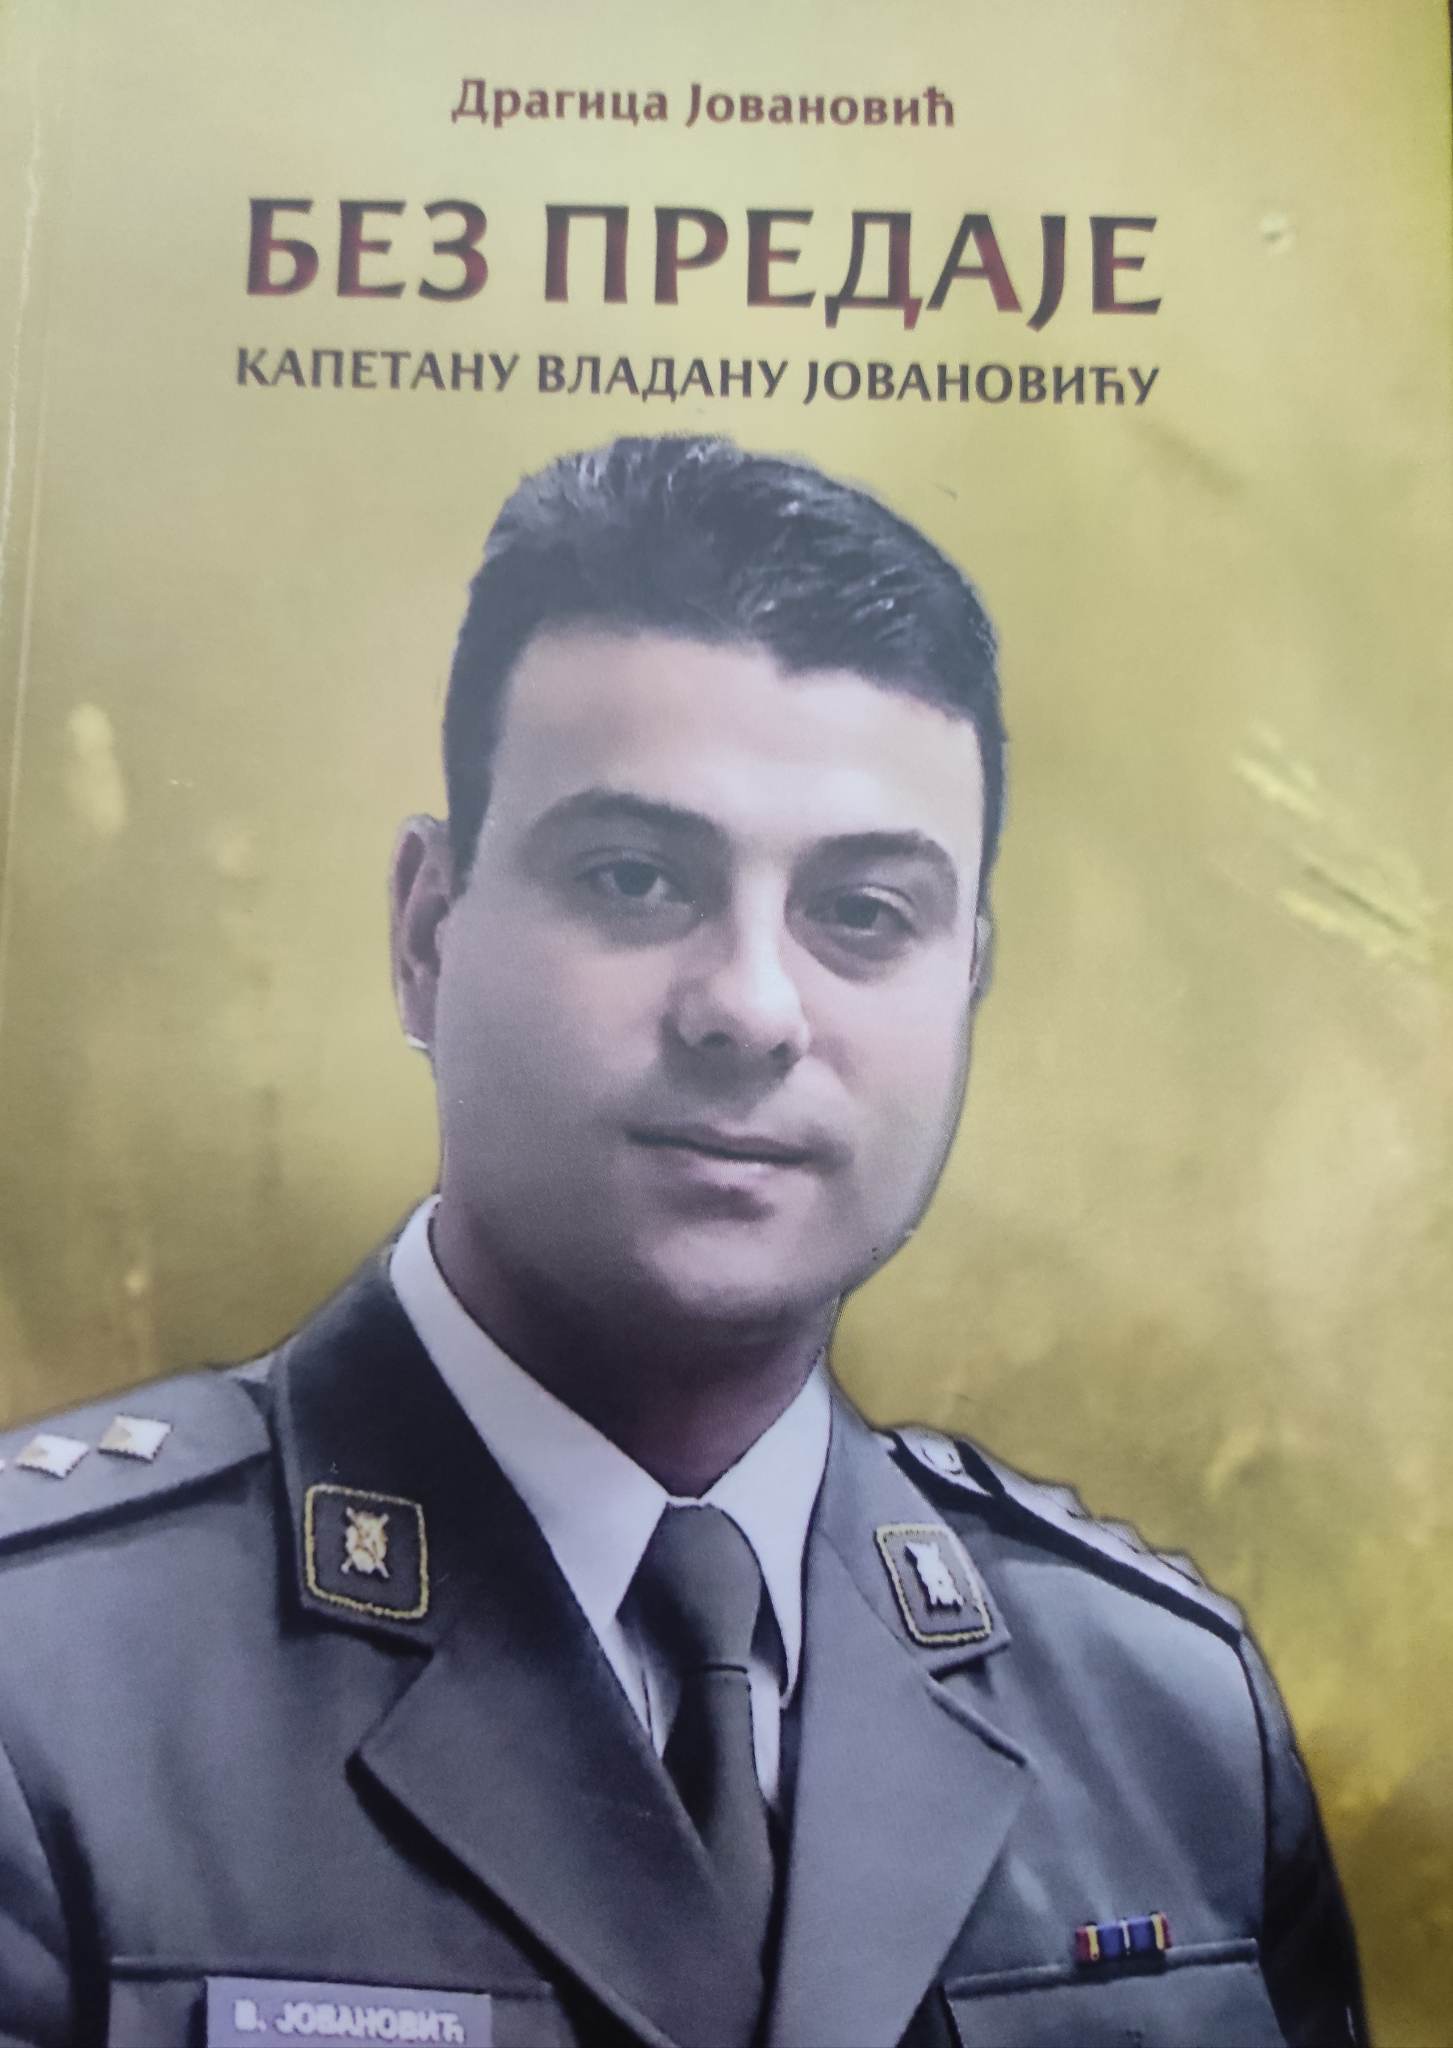 Promocija knjige “Bez predaje” posvećene kapetanu Vladanu Jovanoviću u Muzeju Ponišavlja